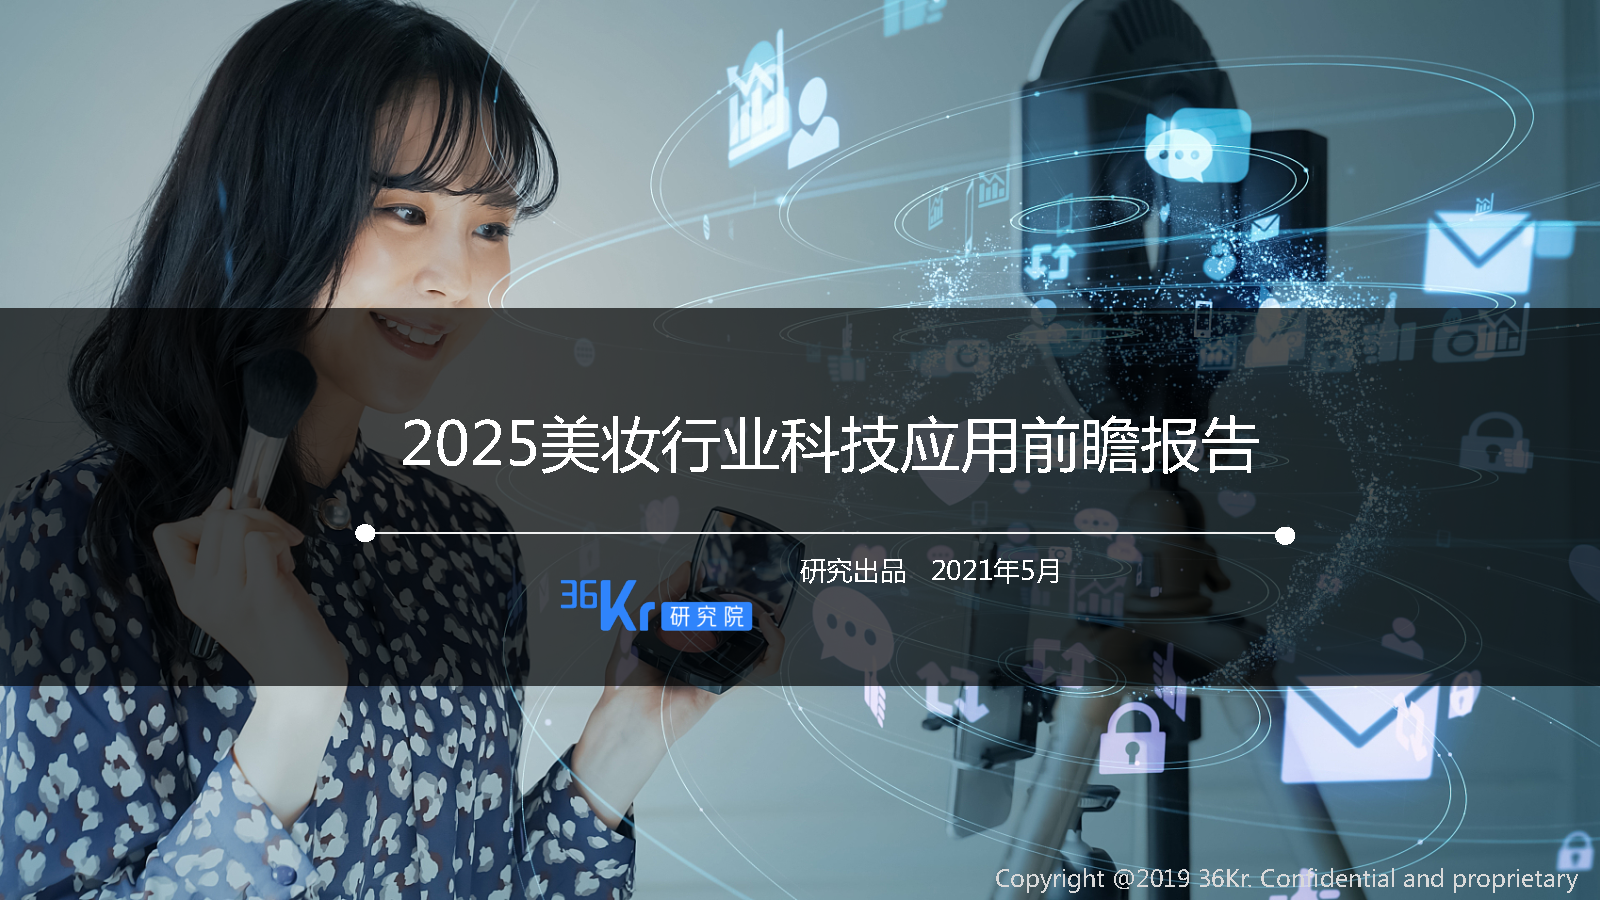 36氪研究院 | 2025美妆行业科技应用前瞻报告